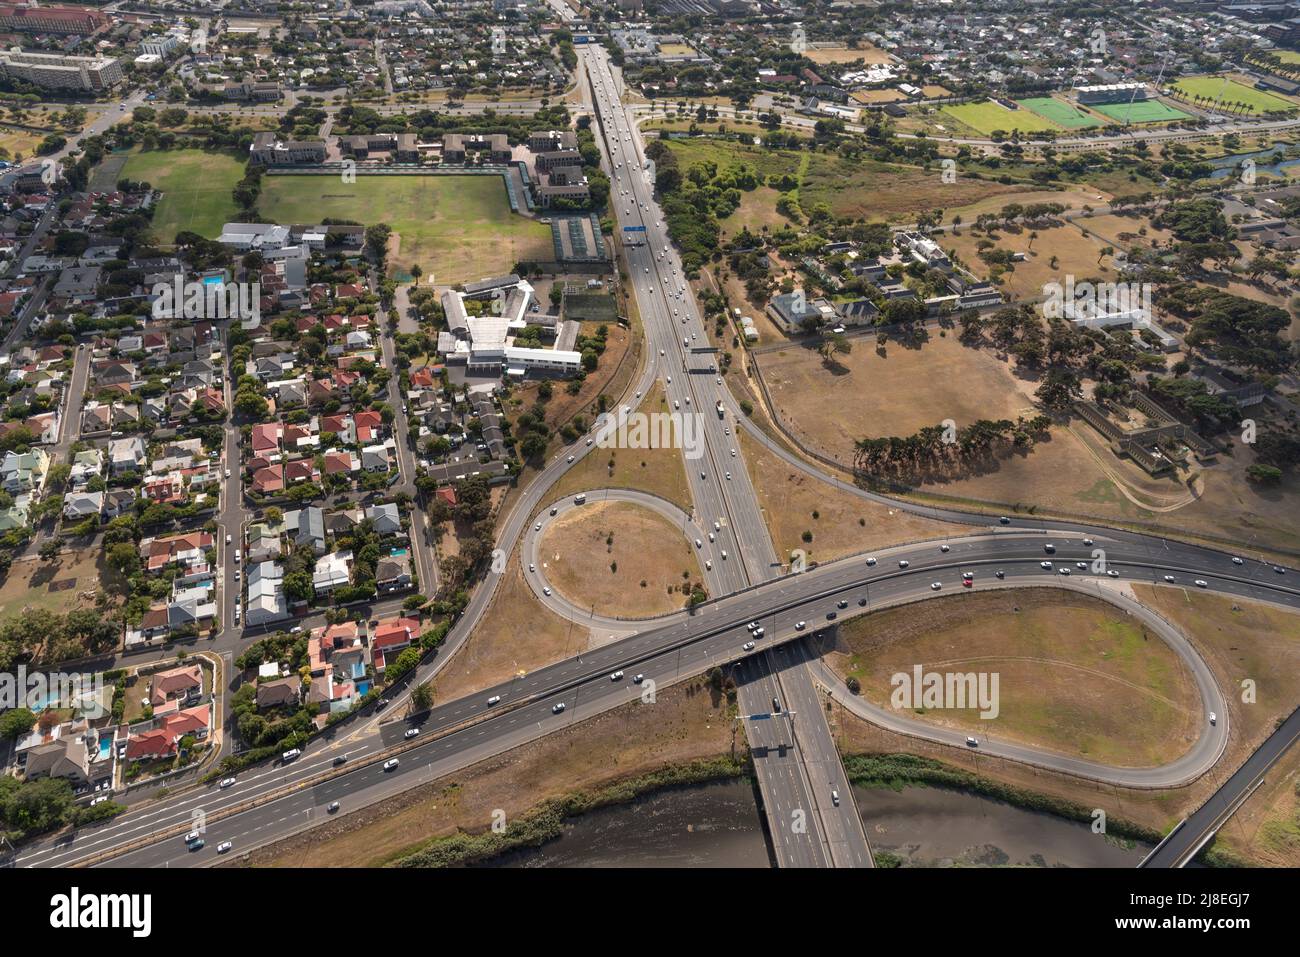 Kapstadt, Südafrika. 2022. Luftaufnahme der Highways M5 und N2 und des Valkenberg Hospitals oben rechts in der Nähe des Stadtzentrums von Kapstadt. Stockfoto